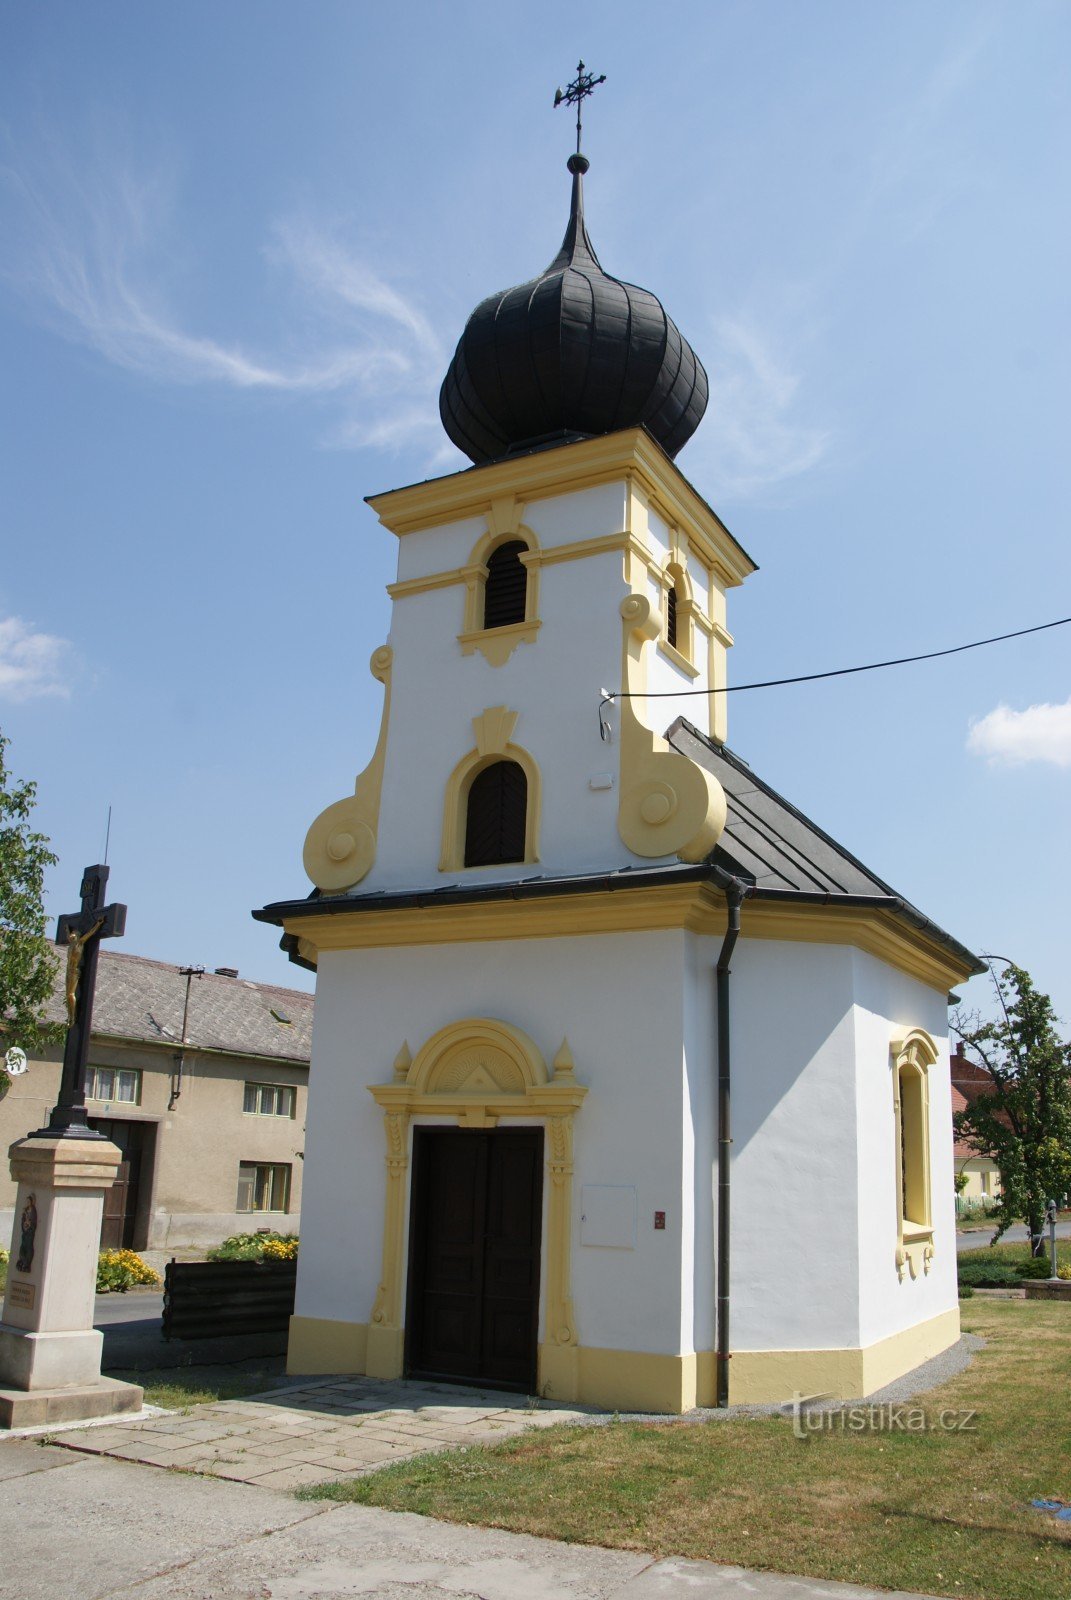 Bílovice - Pyhän Nikolauksen kappeli Floriana